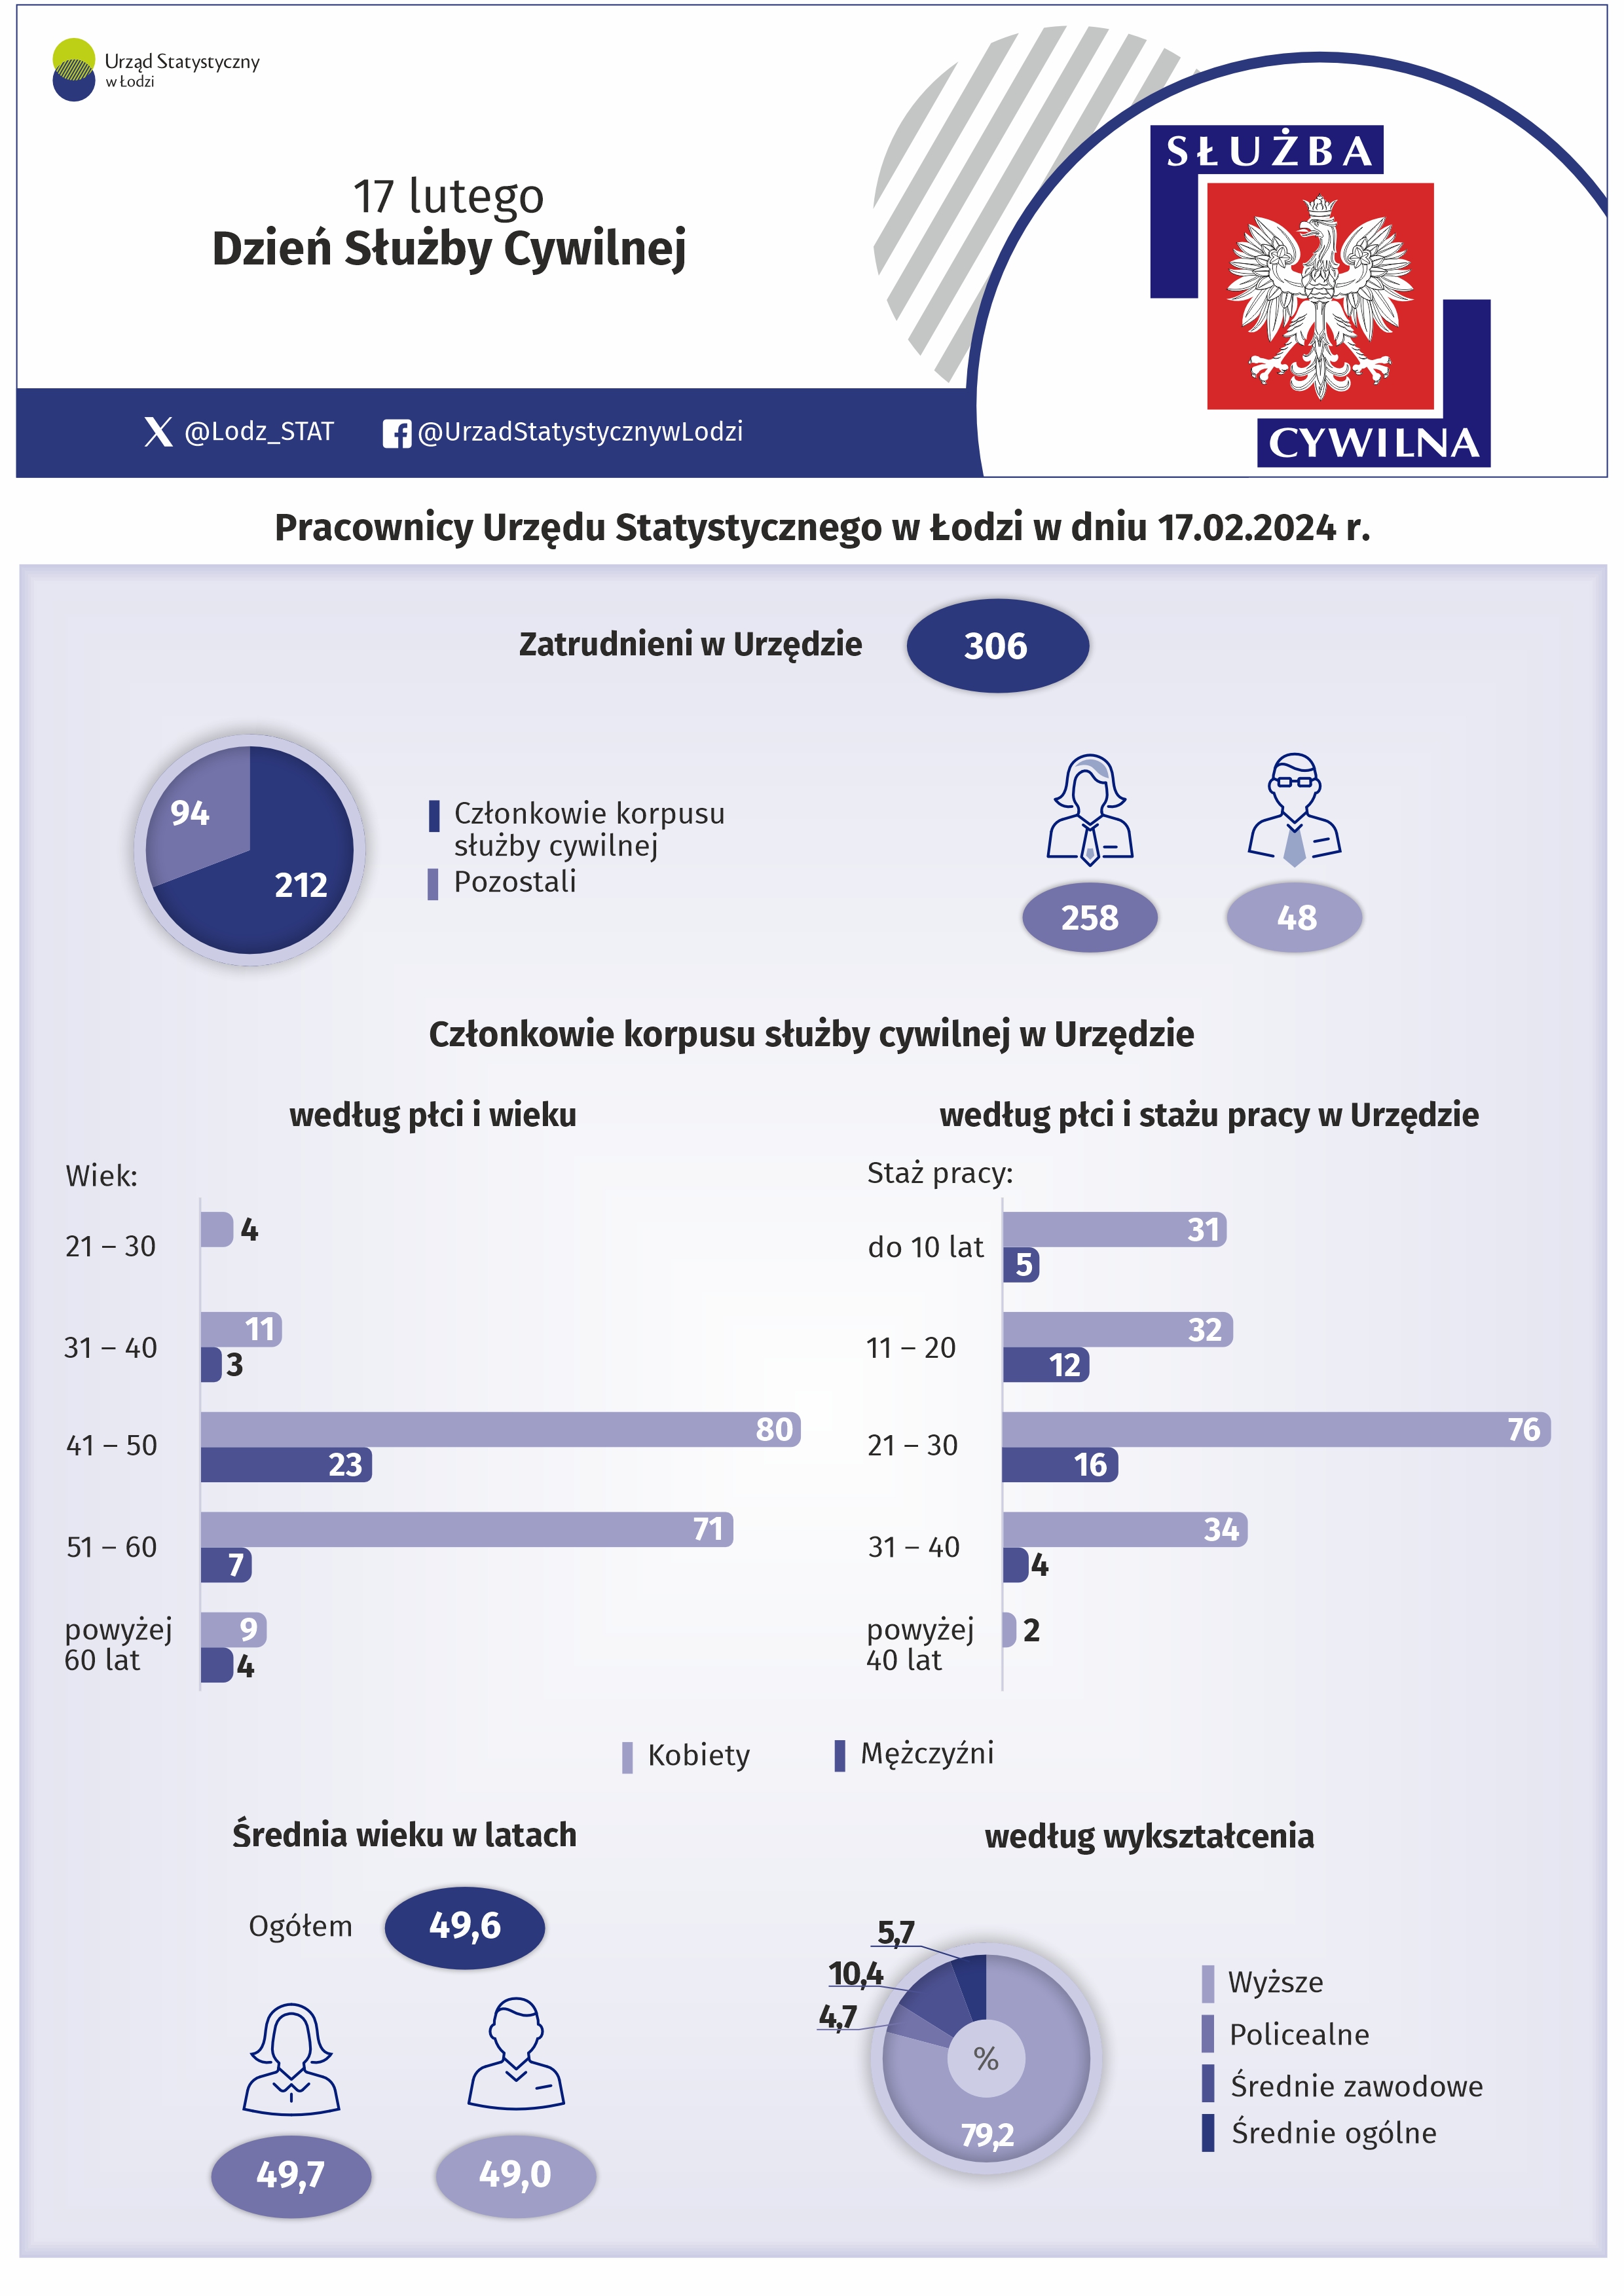 Infografika z okazji Dnia Służby Cywilnej przedstawiająca dane o pracownikach w Urzędzie Statystycznym w Łodzi. Dane w pliku excel